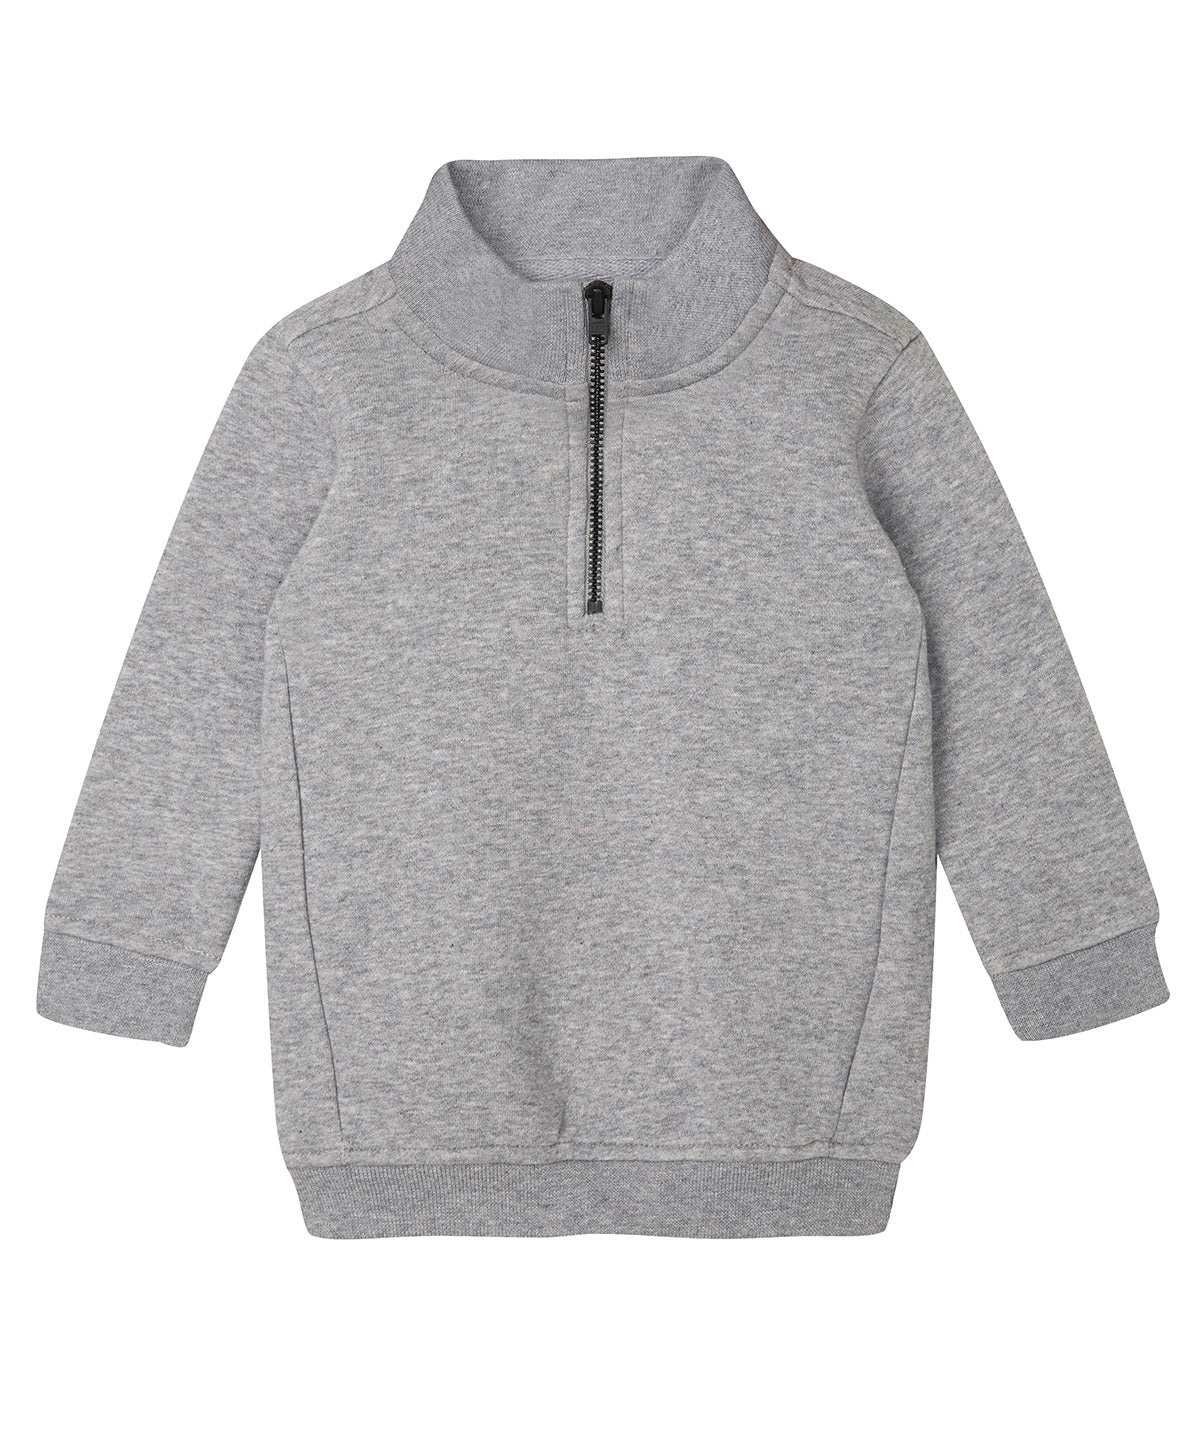 Háskólapeysur - Baby ¼-zip Sweatshirt